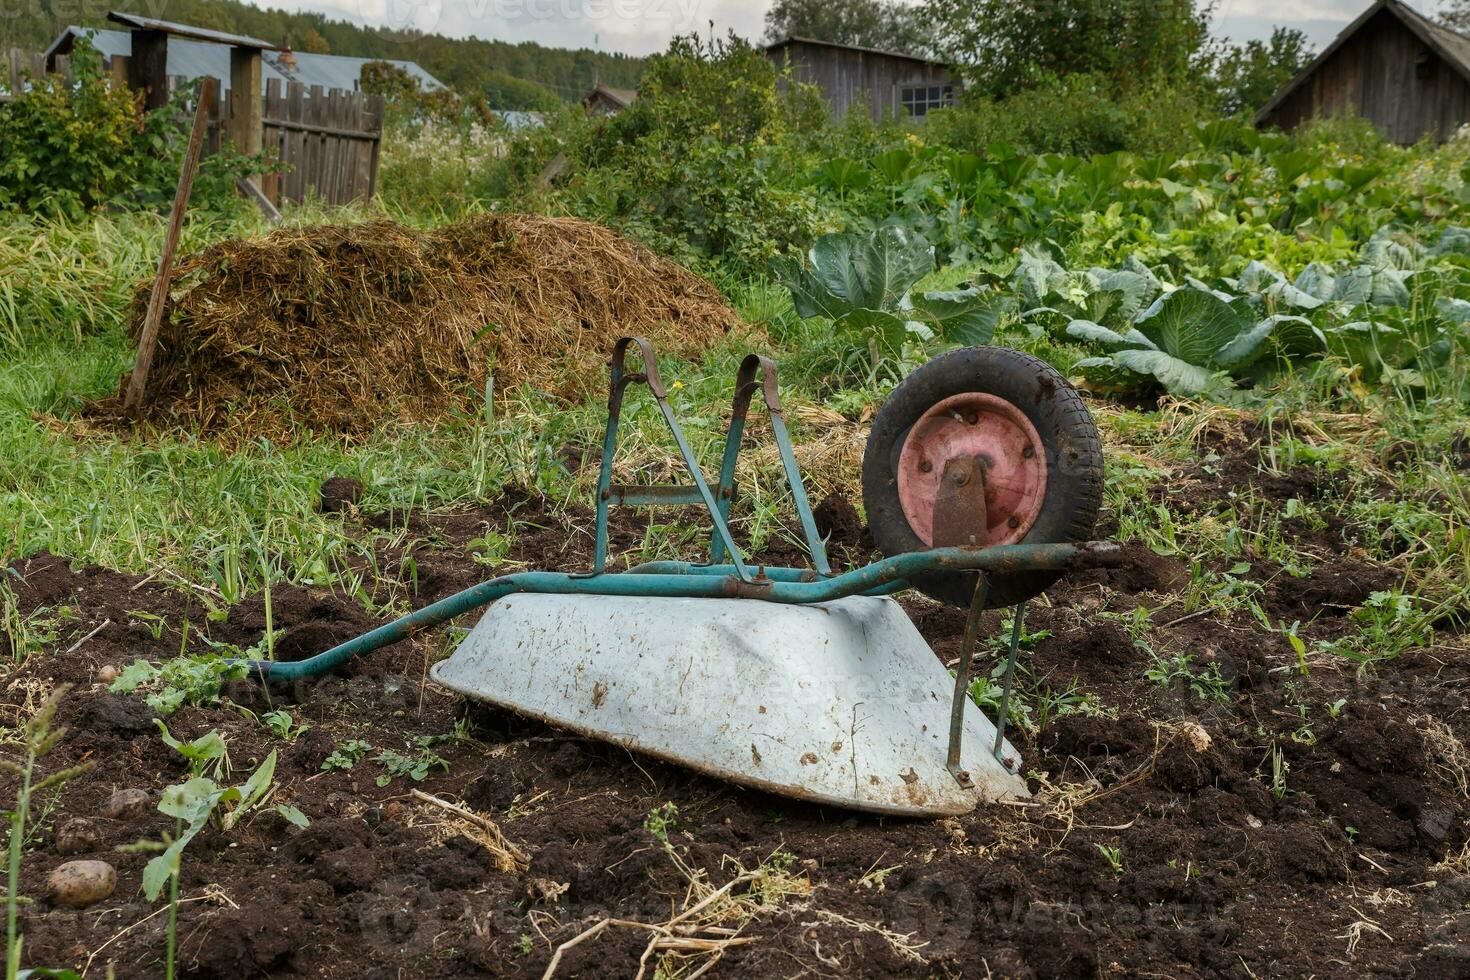 overturned wheelbarrow in the garden. photo